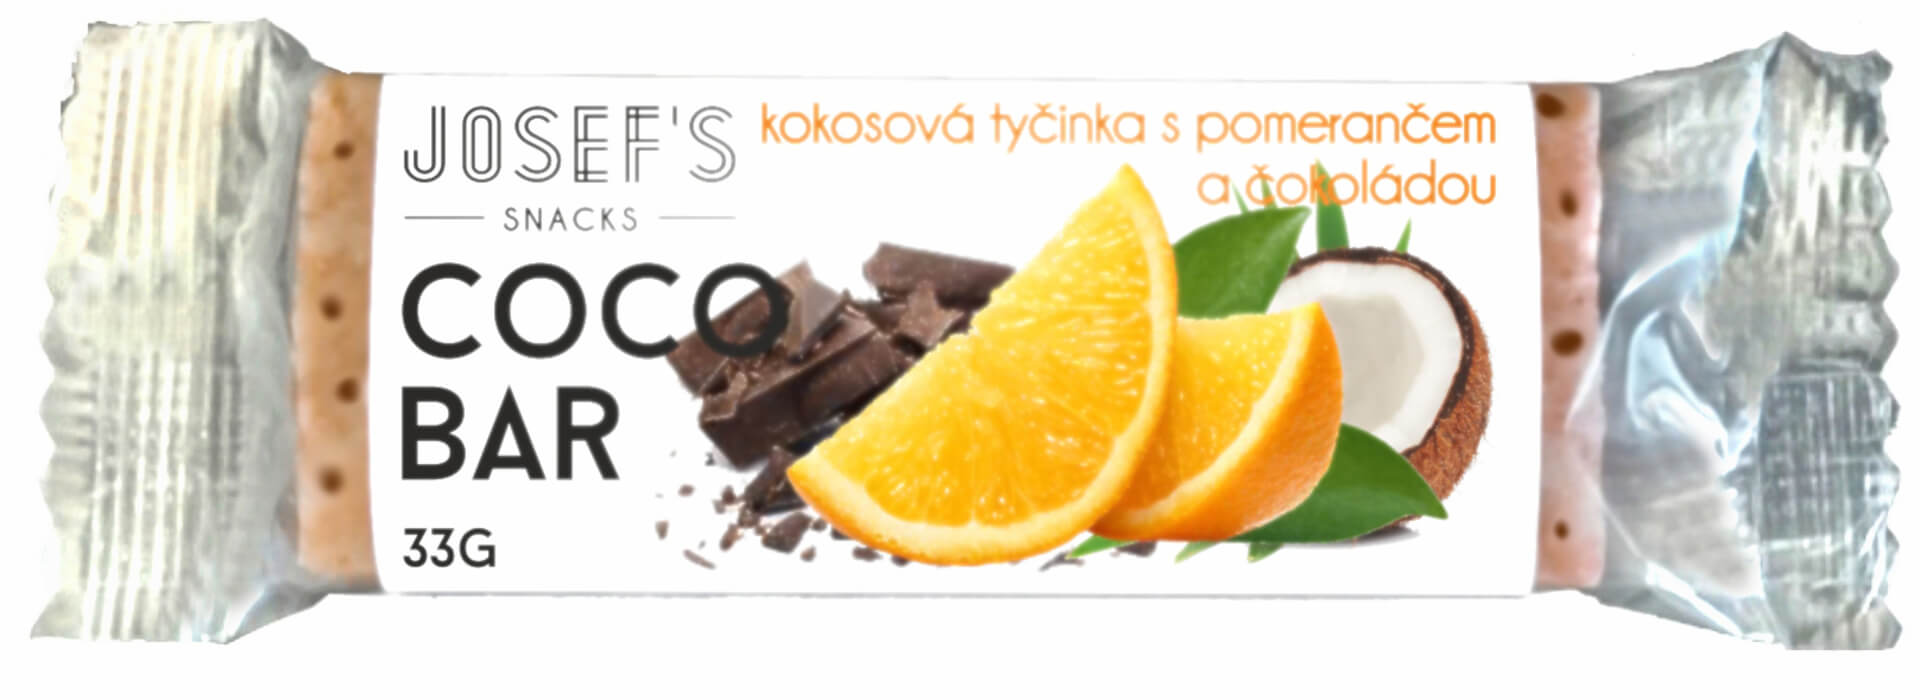 E-shop Josef's snacks Tyčinka kokosová s pomarančom a čokoládou 33 g